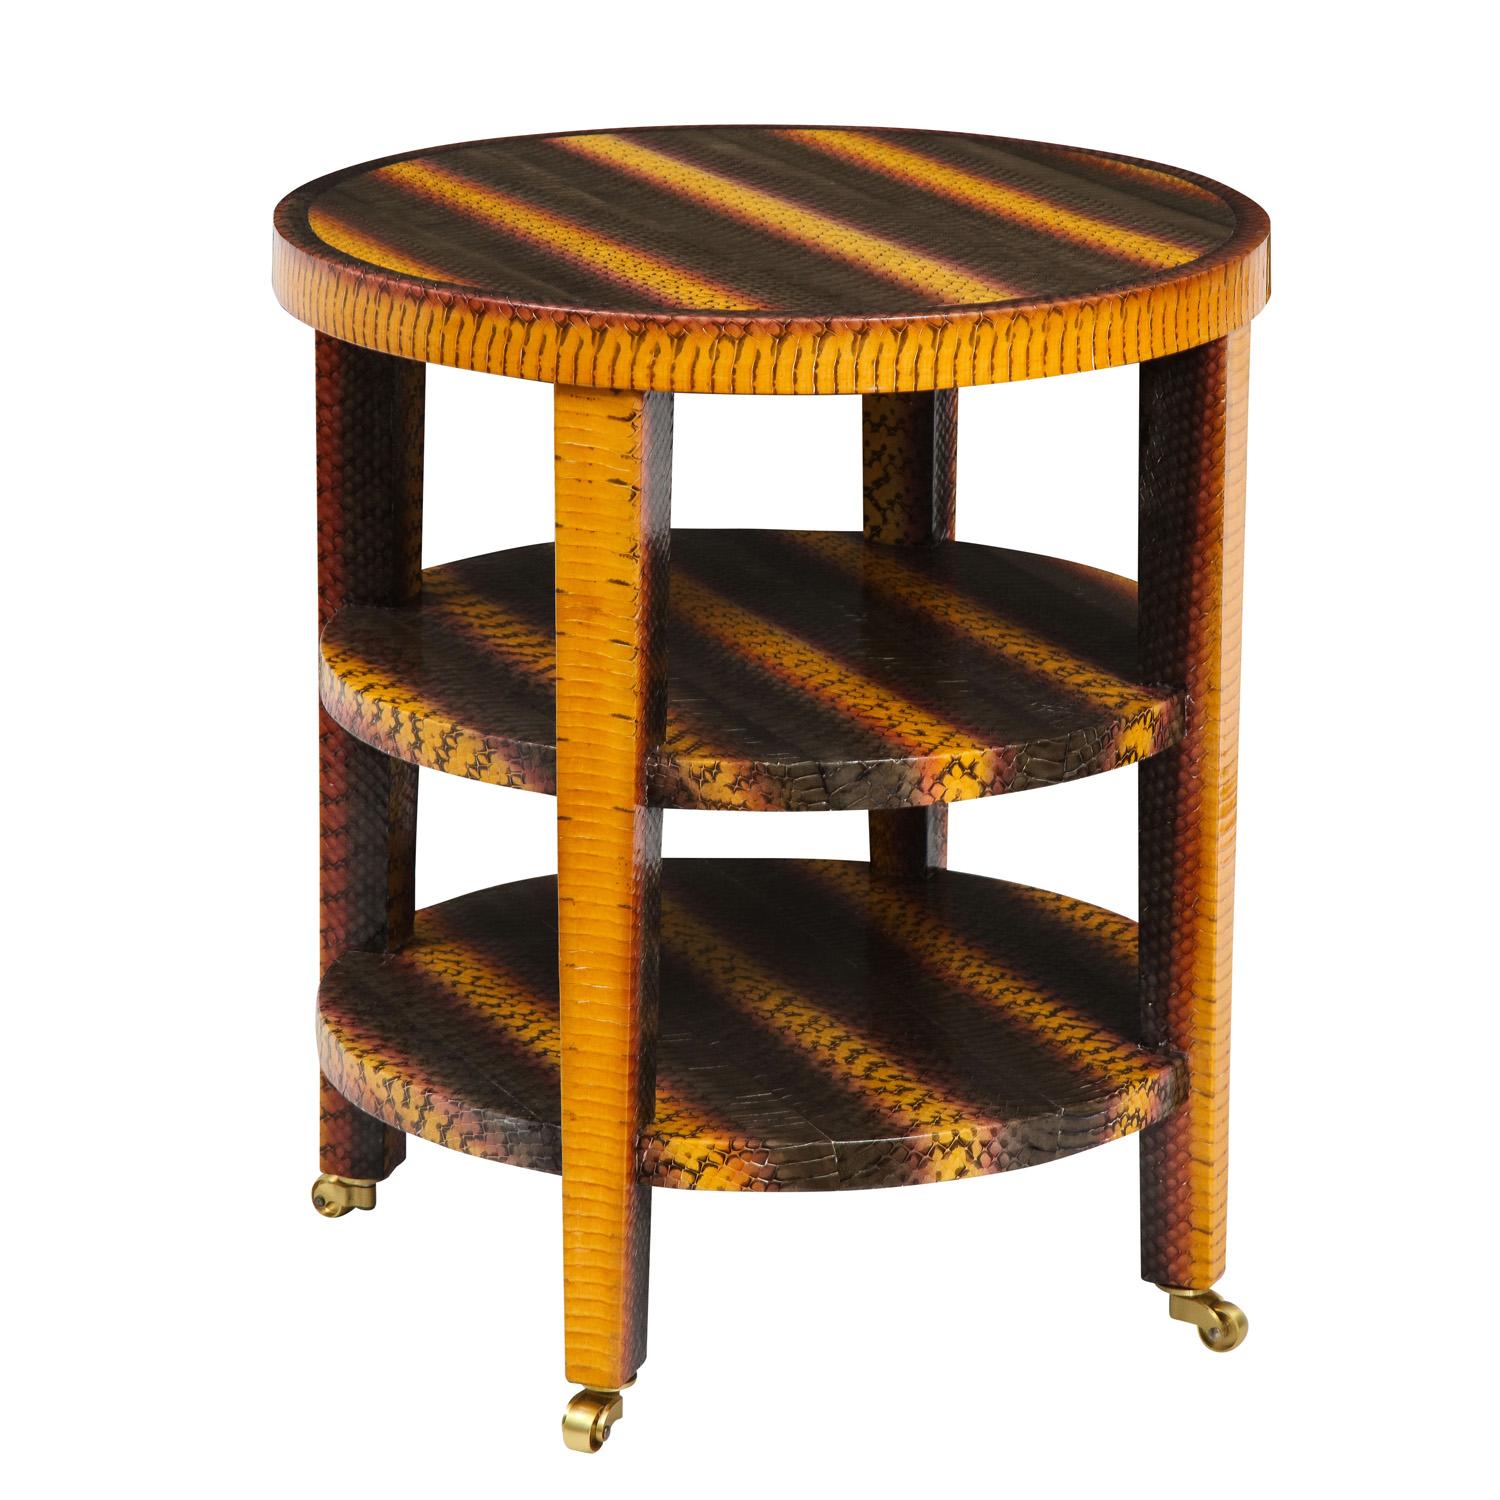 Table d'appoint ronde à 3 niveaux recouverte de peau de serpent jaune, rose et grise sur roulettes en laiton par Evan Lobel pour Lobel Originals, American 2022. Les couleurs et le savoir-faire de cette table sont exceptionnels.